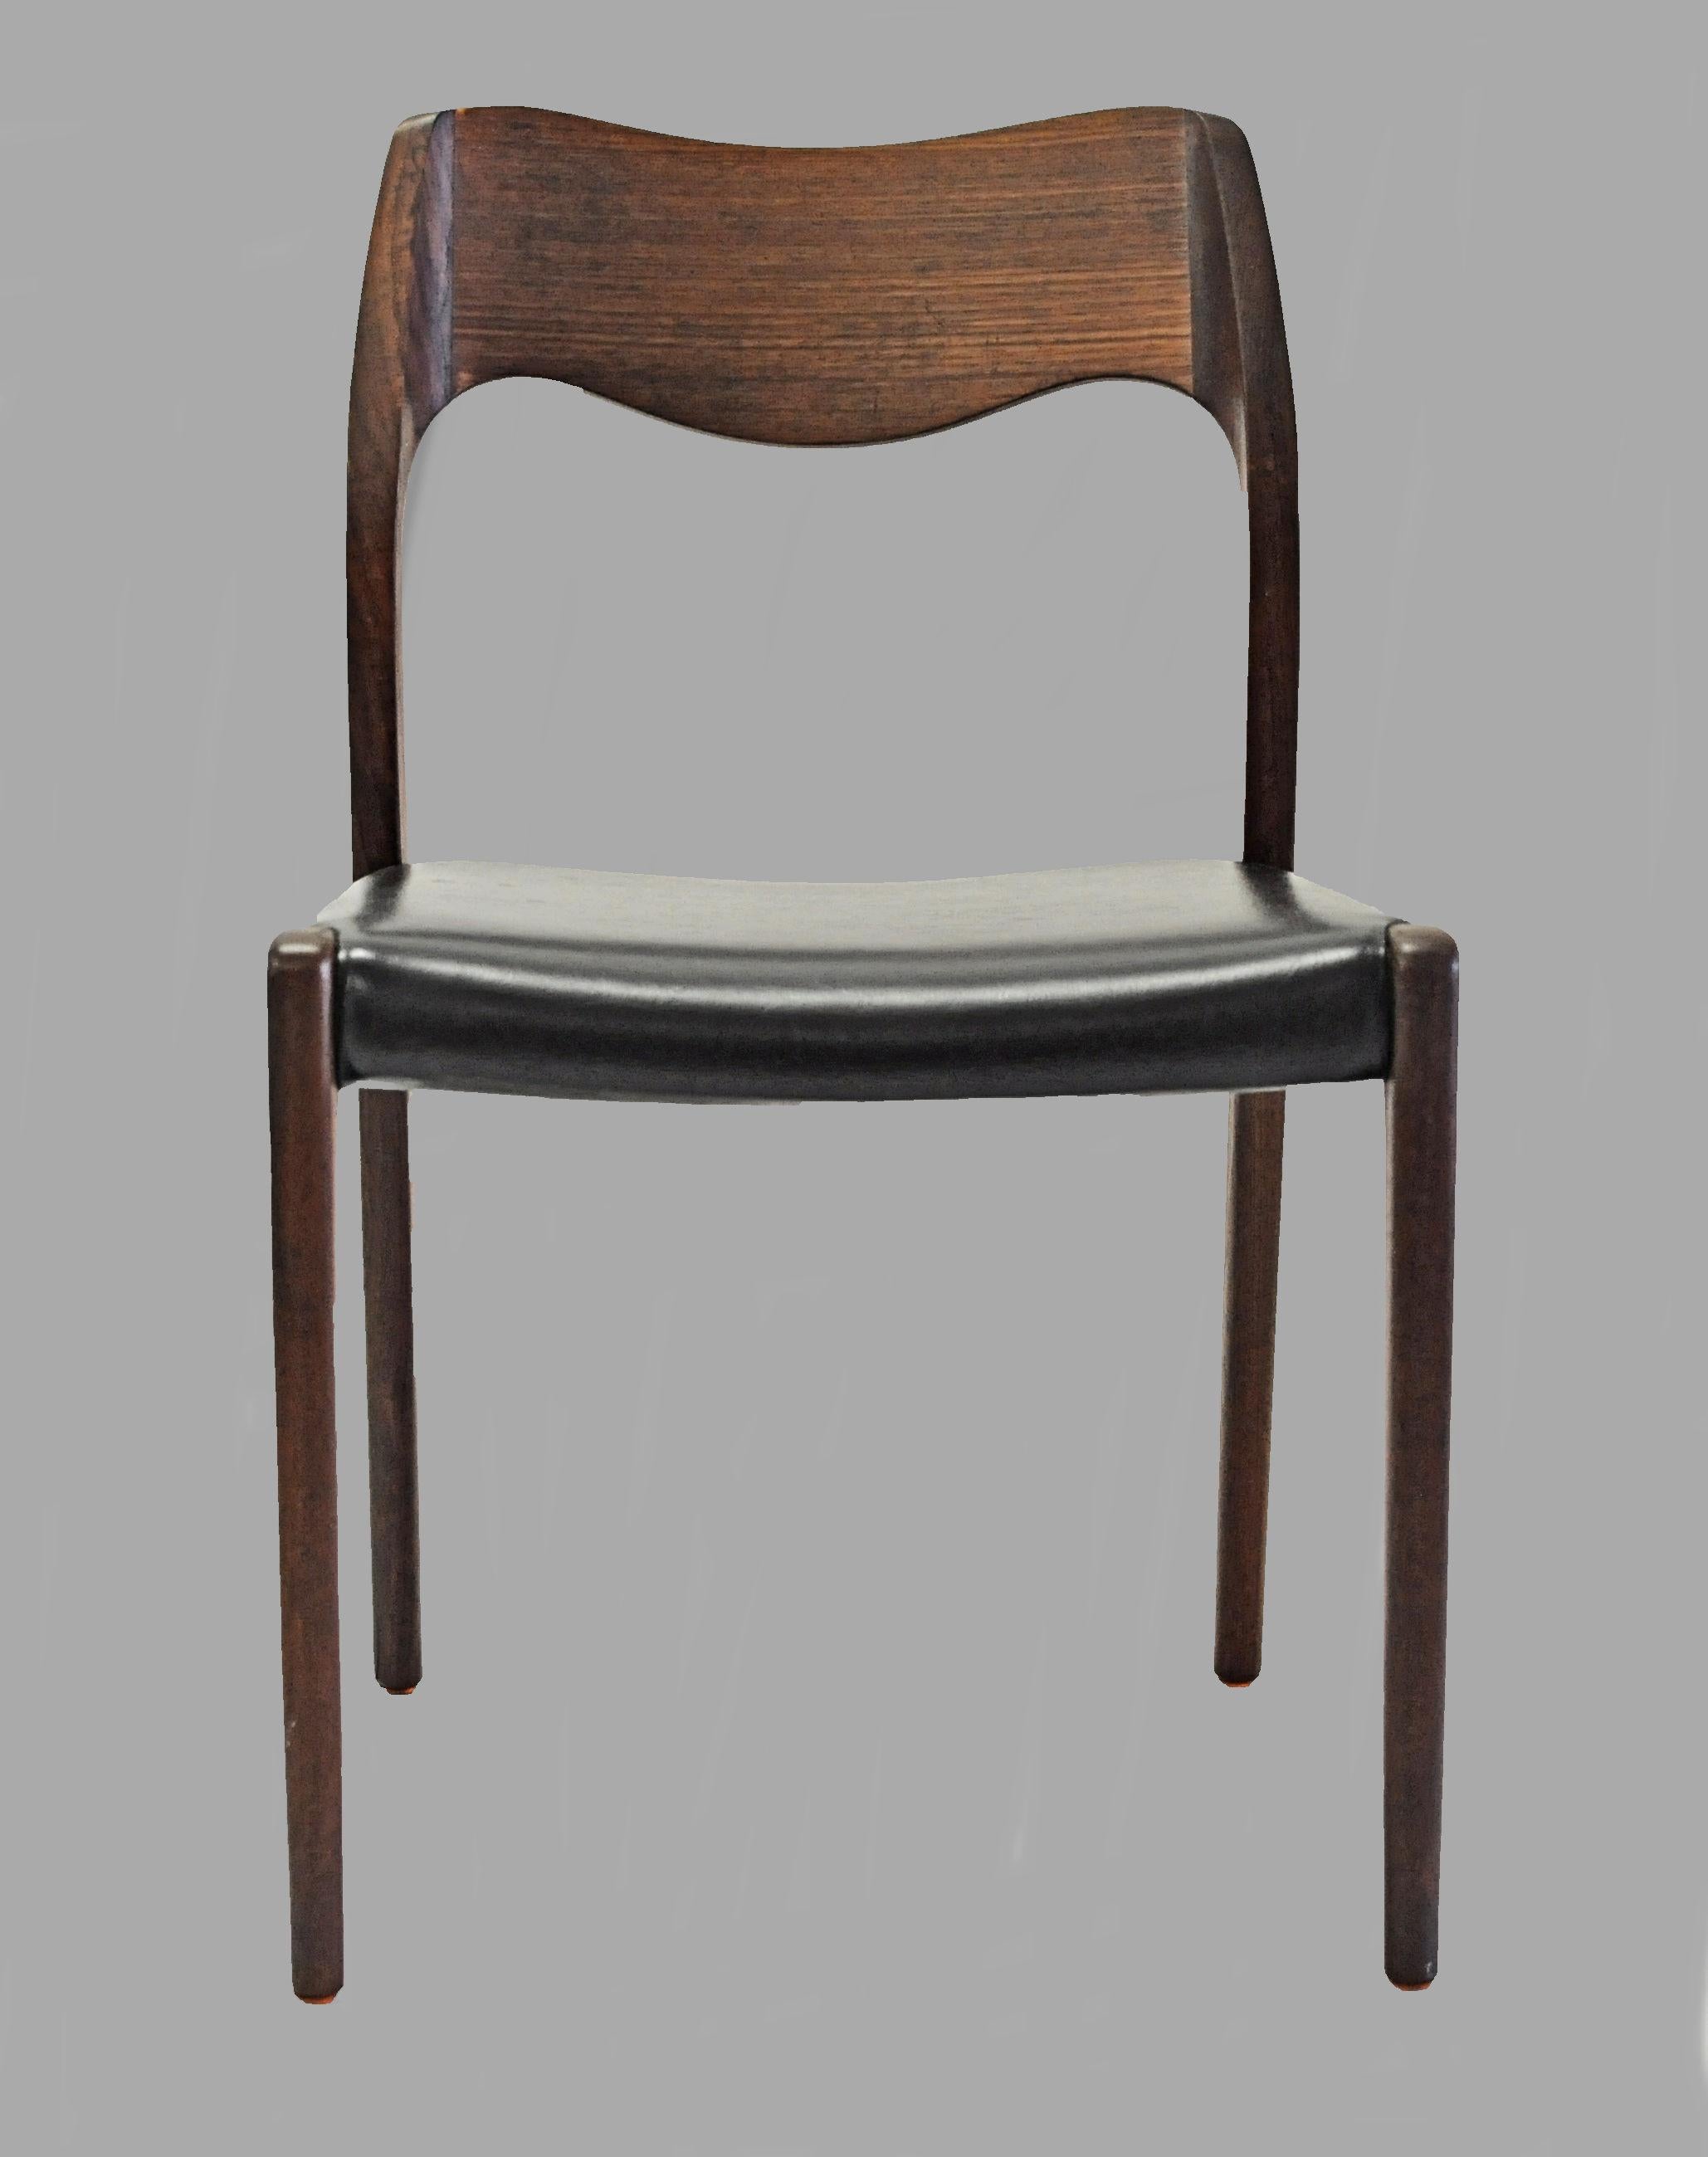 Satz von sechs vollständig restaurierten Teakholz-Esszimmerstühlen, entworfen von Niels Otto Møller im Jahr 1951.

Die Stühle haben einen massiven Rahmen und eine Rückenlehne aus Teakholz mit geraden Beinen und einer eleganten, organisch geformten